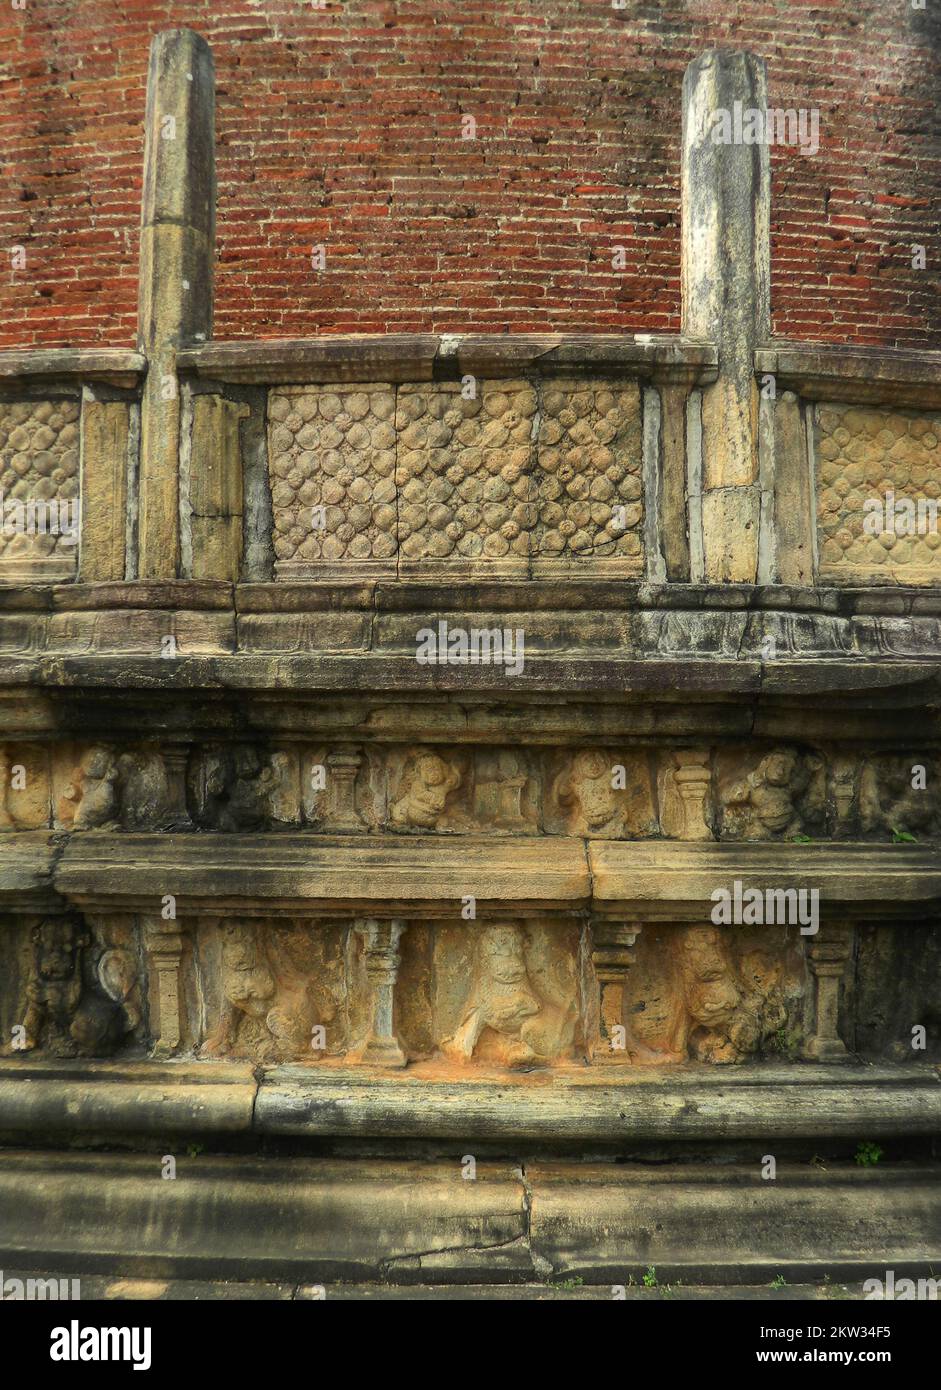 Polonnaruwa est le deuxième royaume de l'ancien Sri Lanka. Le roi Parakramabahu 4 a développé de nombreux wewas et temples et a établi la subsistance du pays. Sculptures de Watadage dans la paroi extérieure, fleurs de Binara et nains. L'ère d'or a été ruinée par le roi Maga en envahissant et en détruisant les temples et les sanctuaires du royaume. Polonnaruwa, Sri Lanka. Banque D'Images